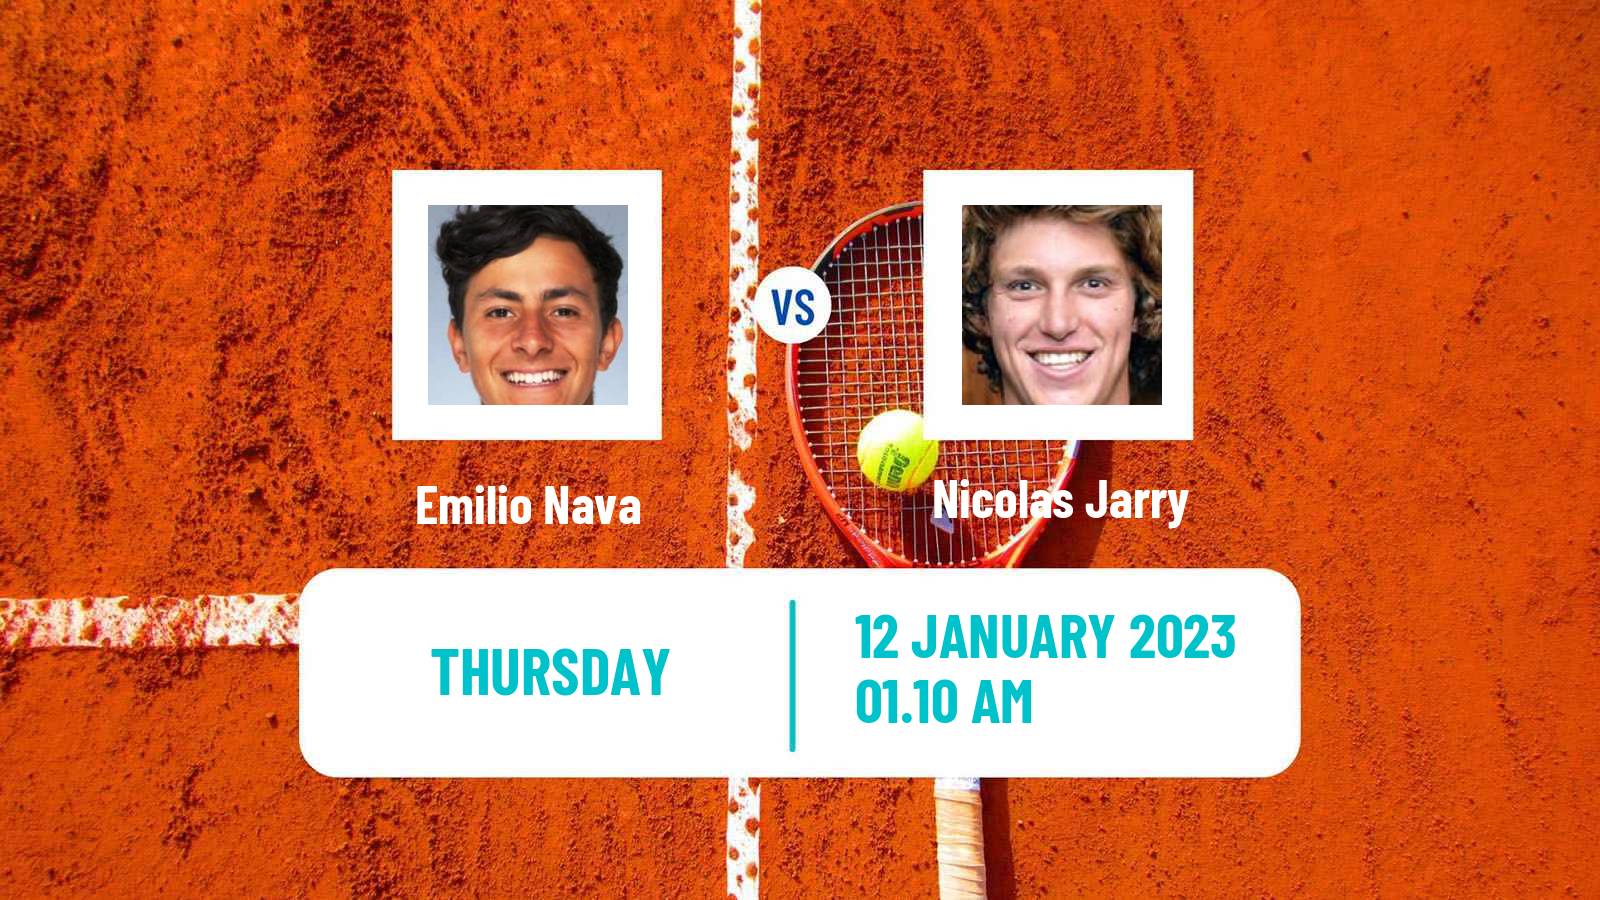 Tennis ATP Australian Open Emilio Nava - Nicolas Jarry